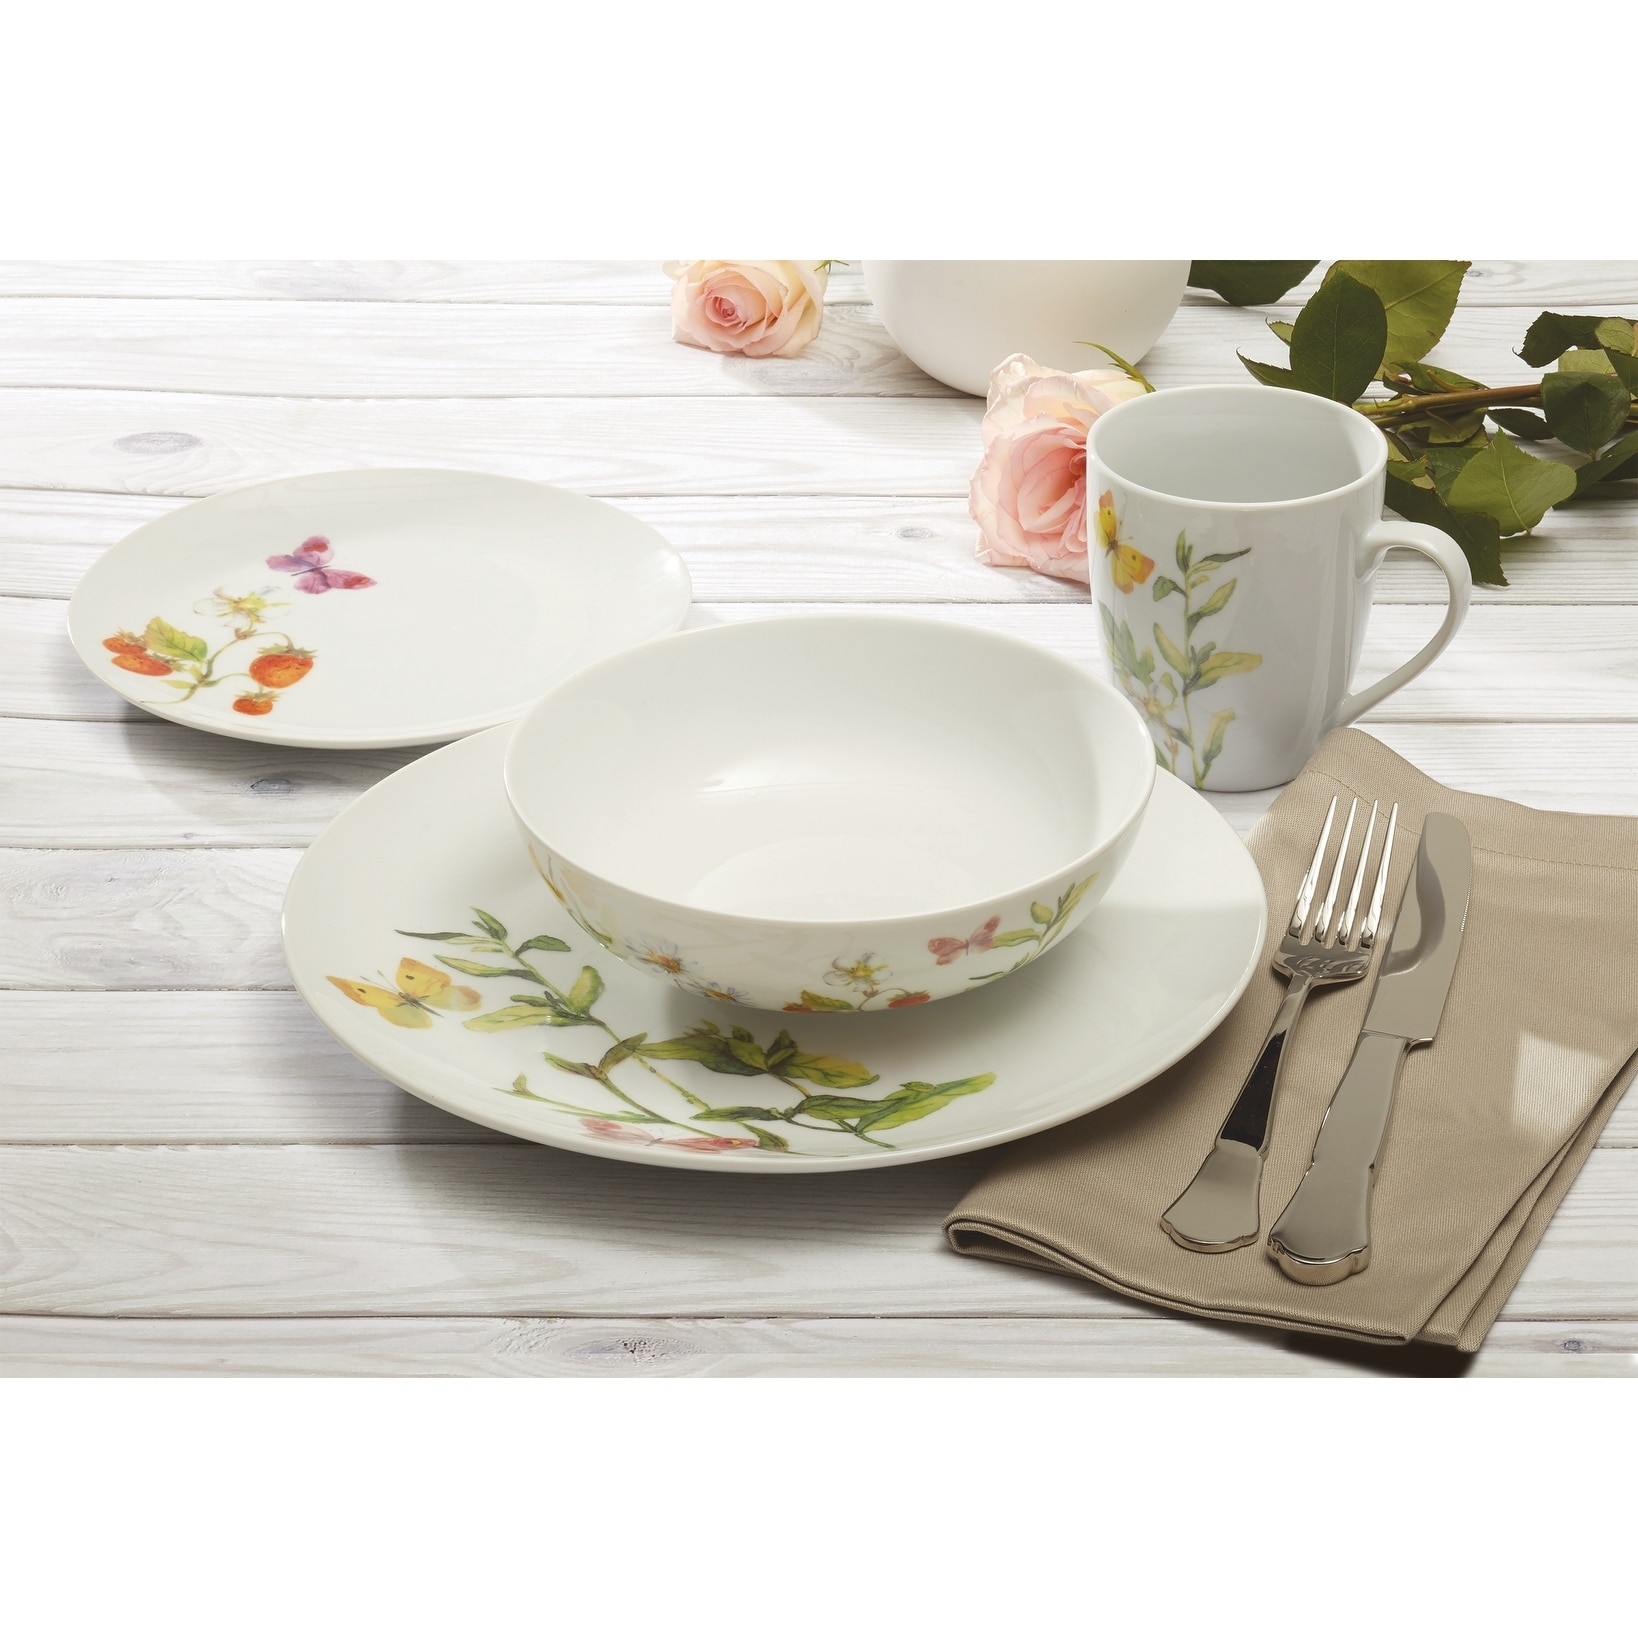 MALACASA Dinnerware Sets for 12, 56-Piece Porcelain Square Plates